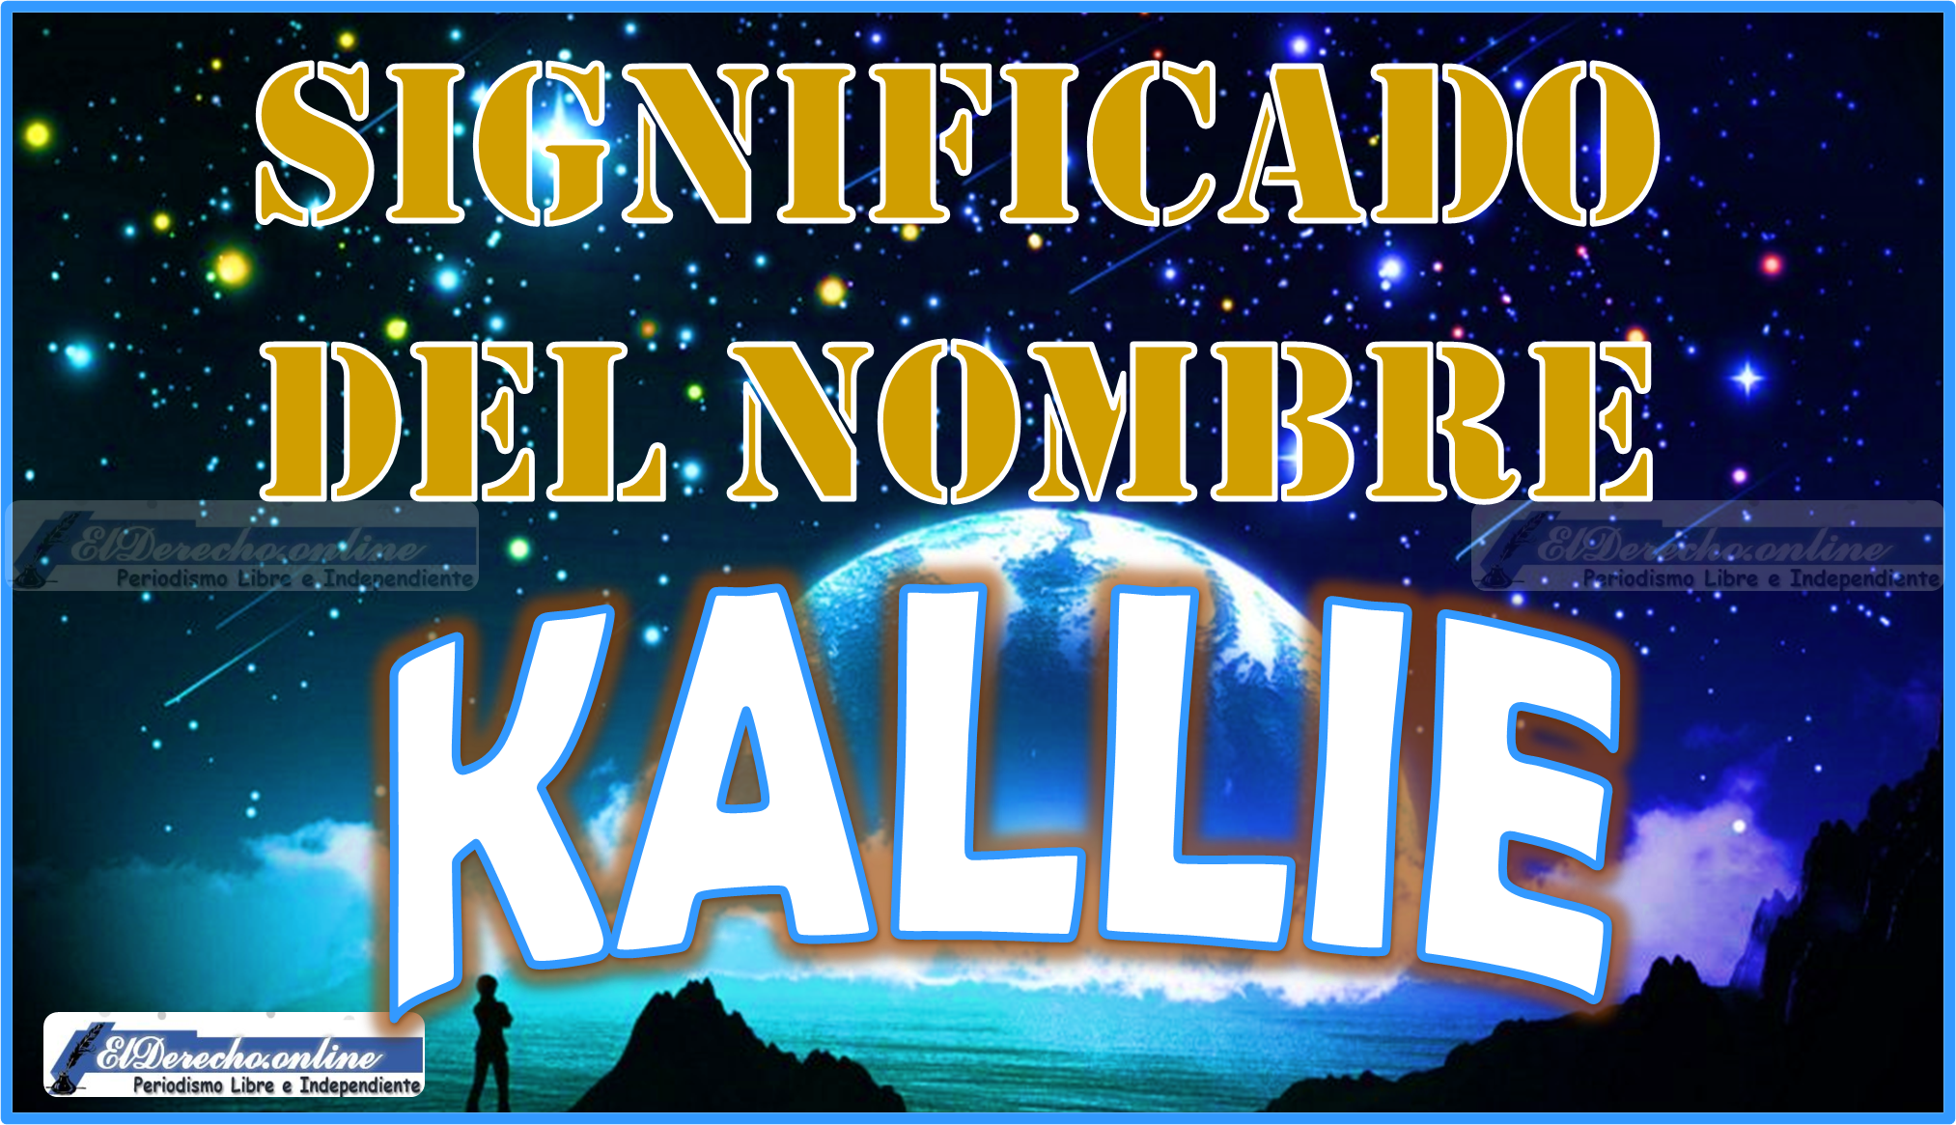 Significado del nombre Kallie, su origen y más